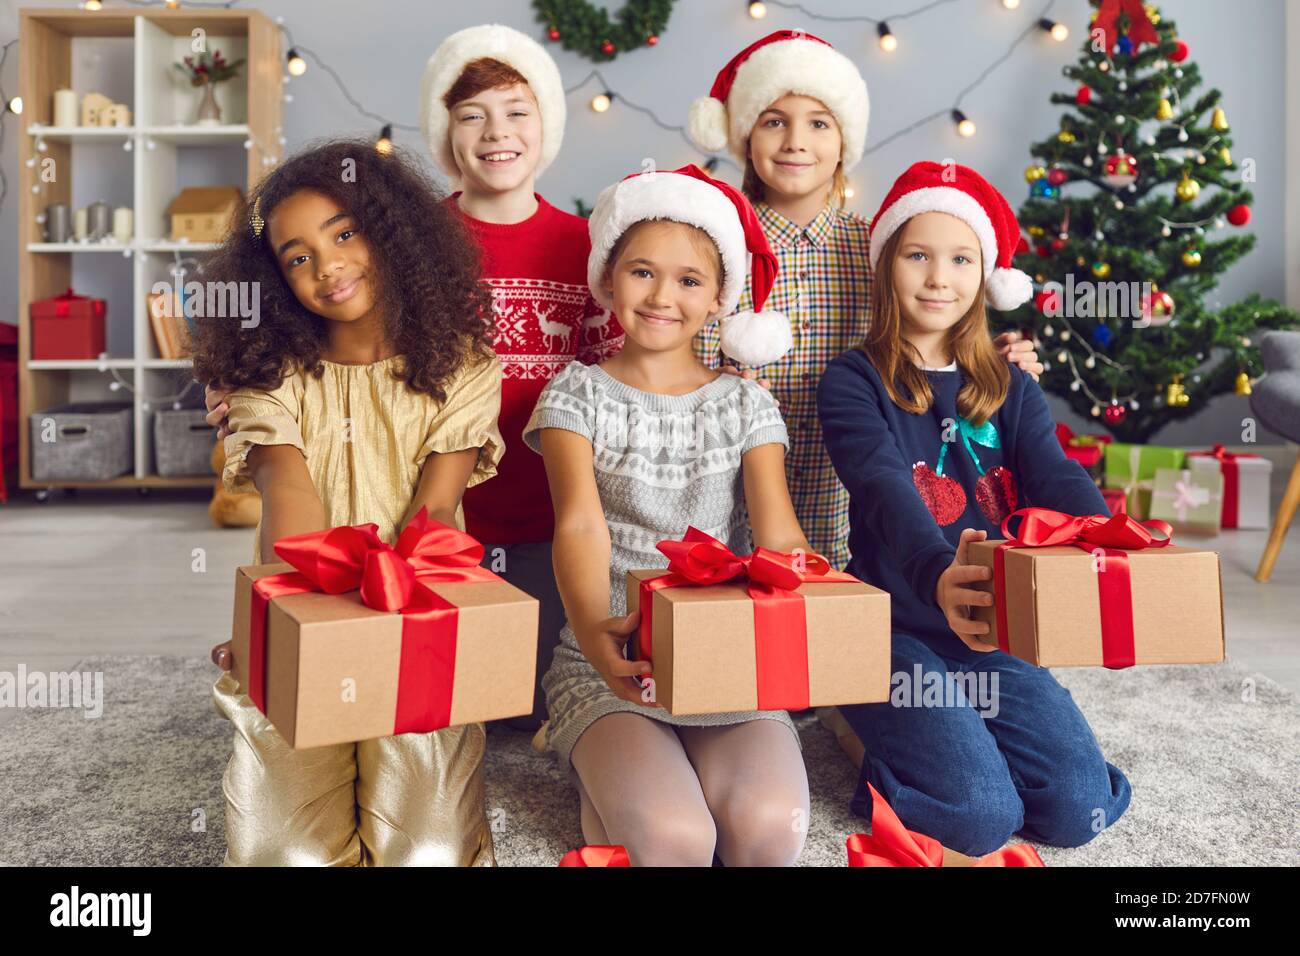 Gruppo di felici bambini multirazziali che tengono i regali di Natale che hanno preparato per gli amici Foto Stock